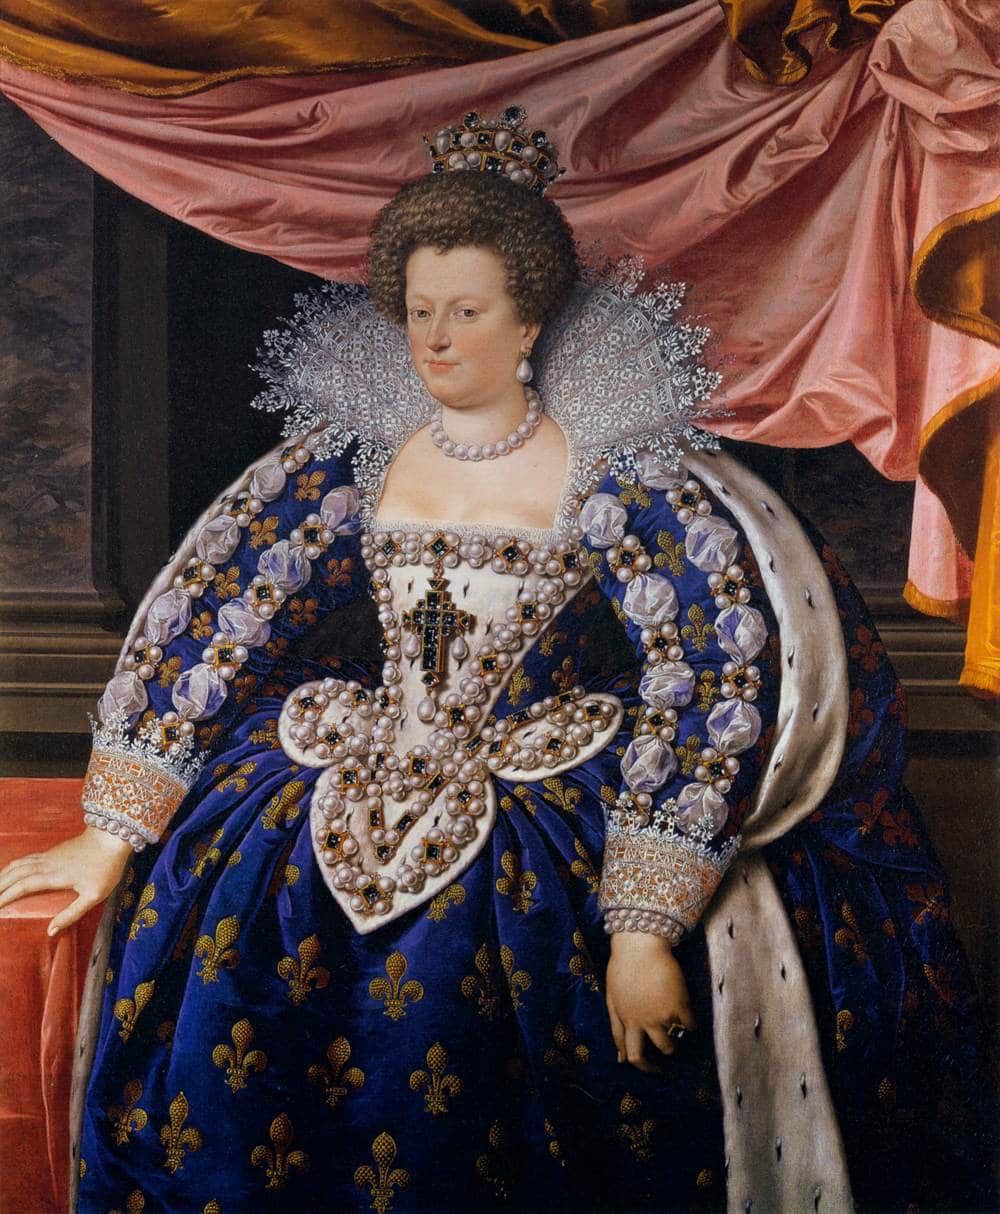 Portrait de Marie de Médicis portant une parure complète de perles et des perles brodées sur sa robe